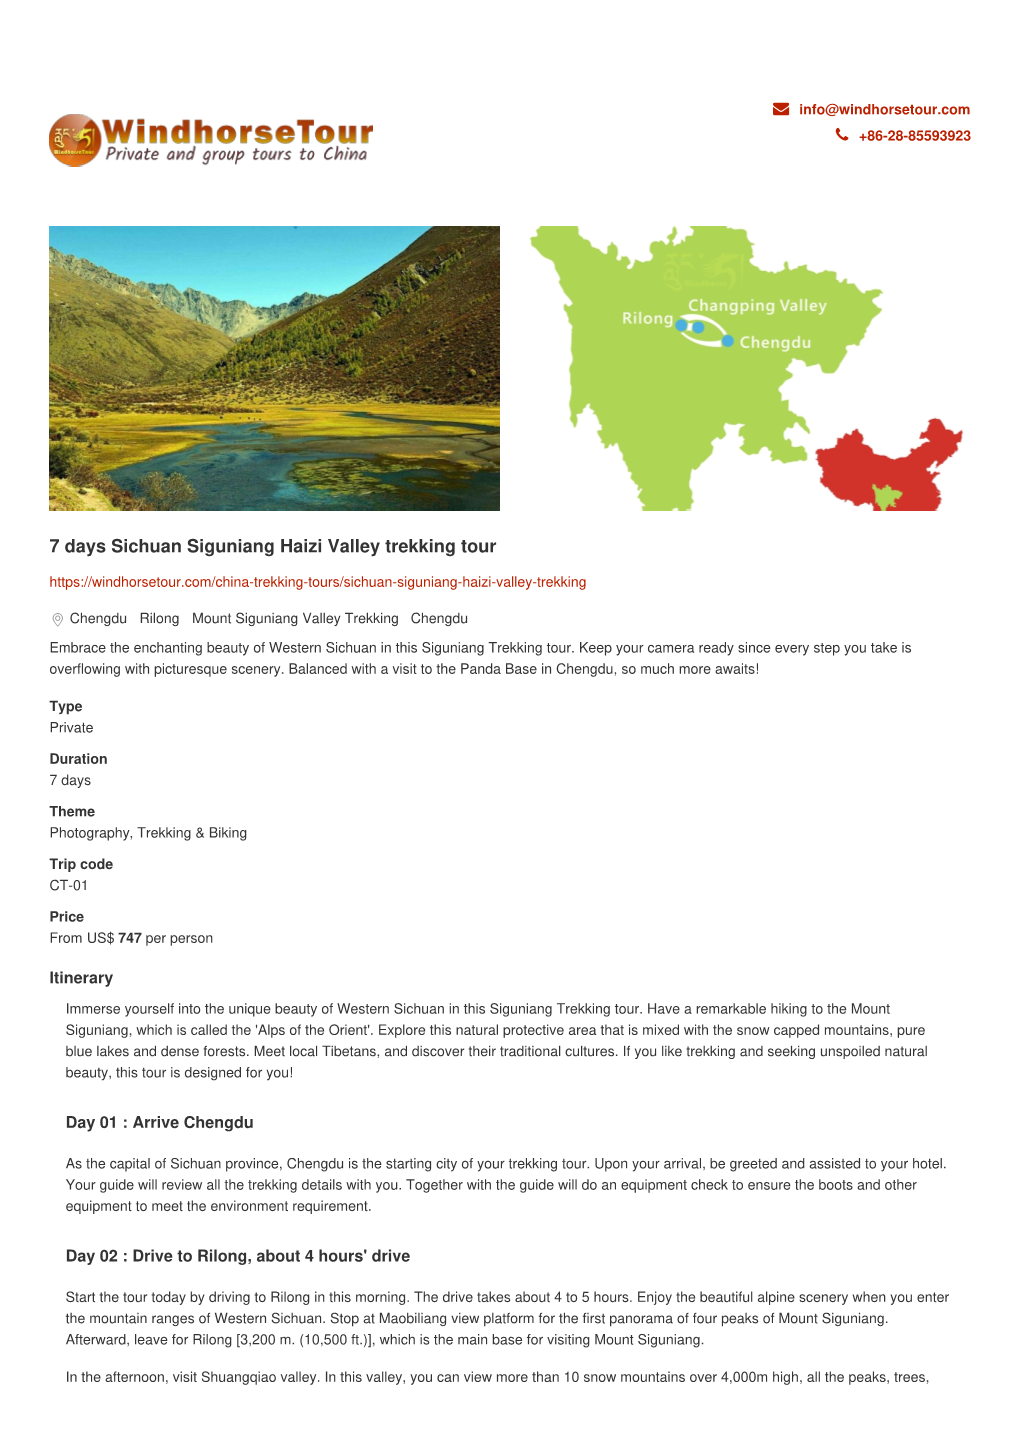 7 Days Sichuan Siguniang Haizi Valley Trekking Tour